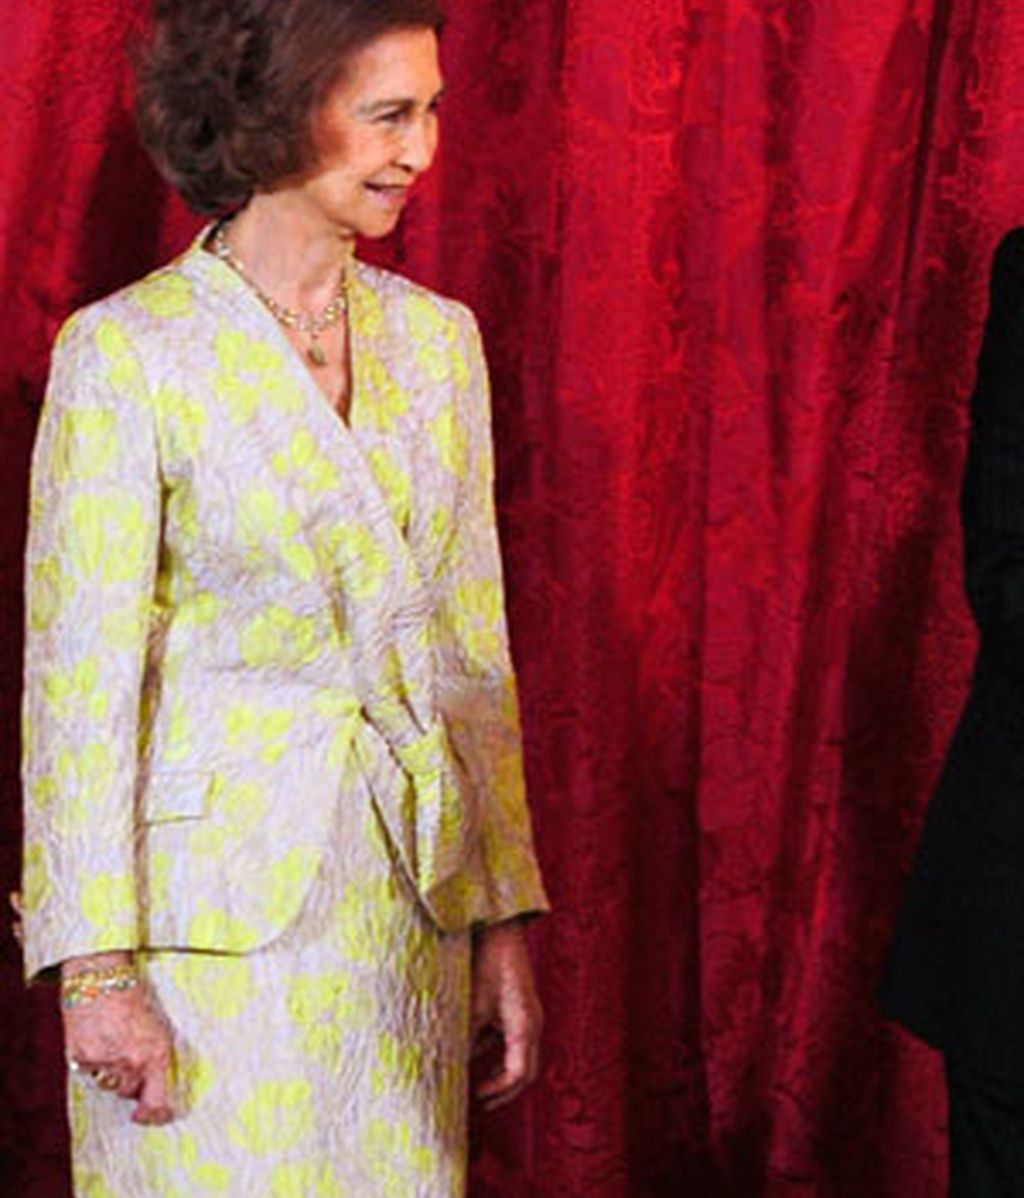 La Reina Sofía, arriesgada en el vestir